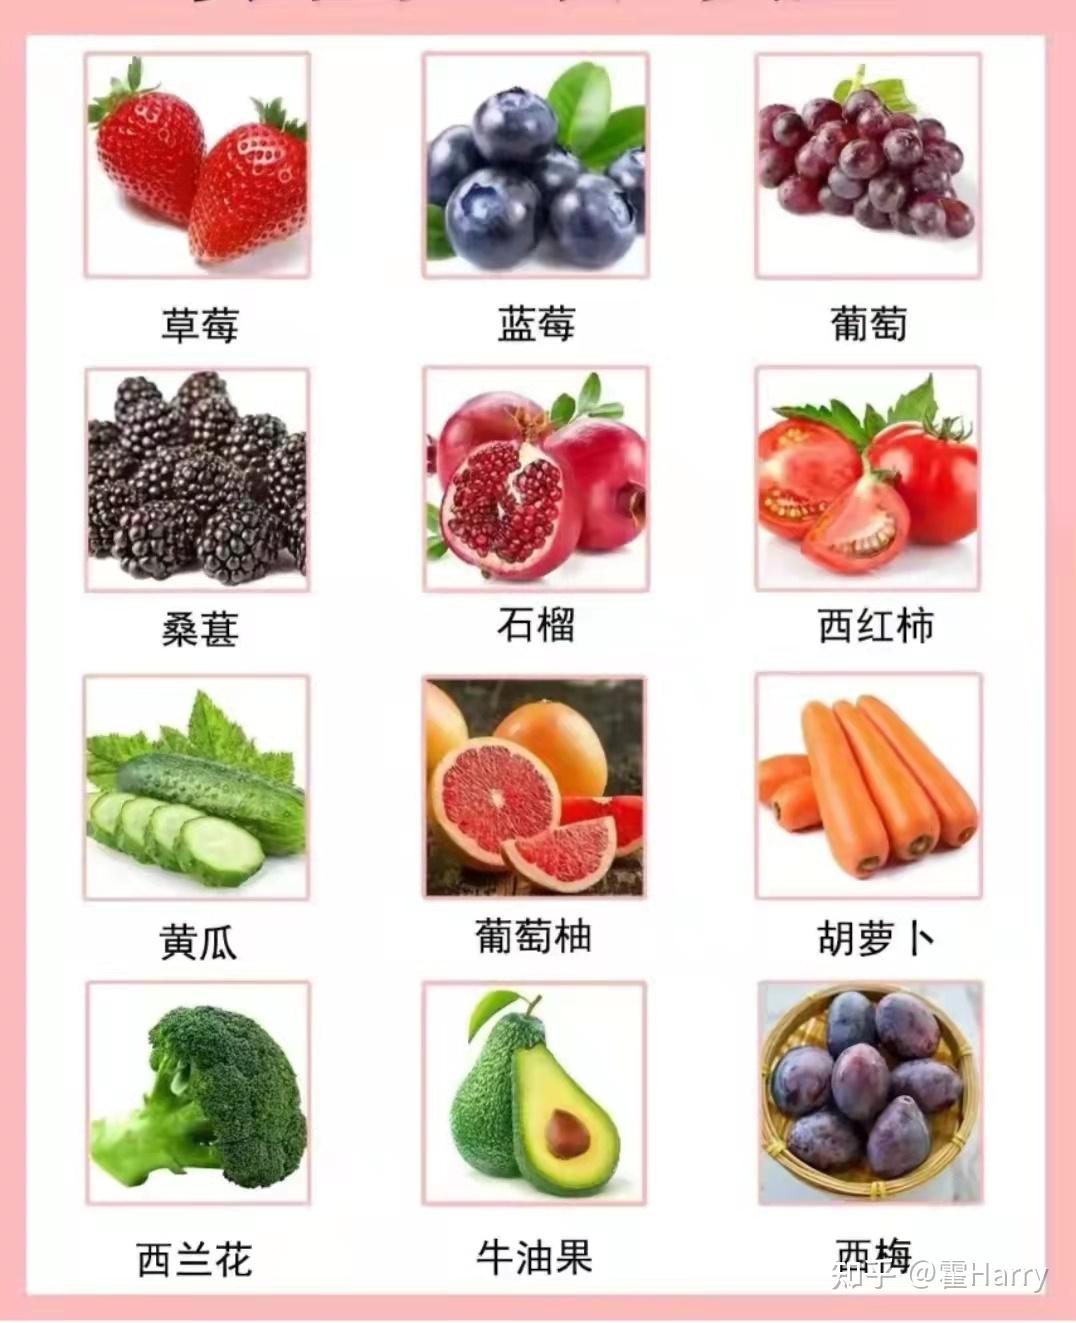 减肥期间最适合吃哪些水果？ - 知乎